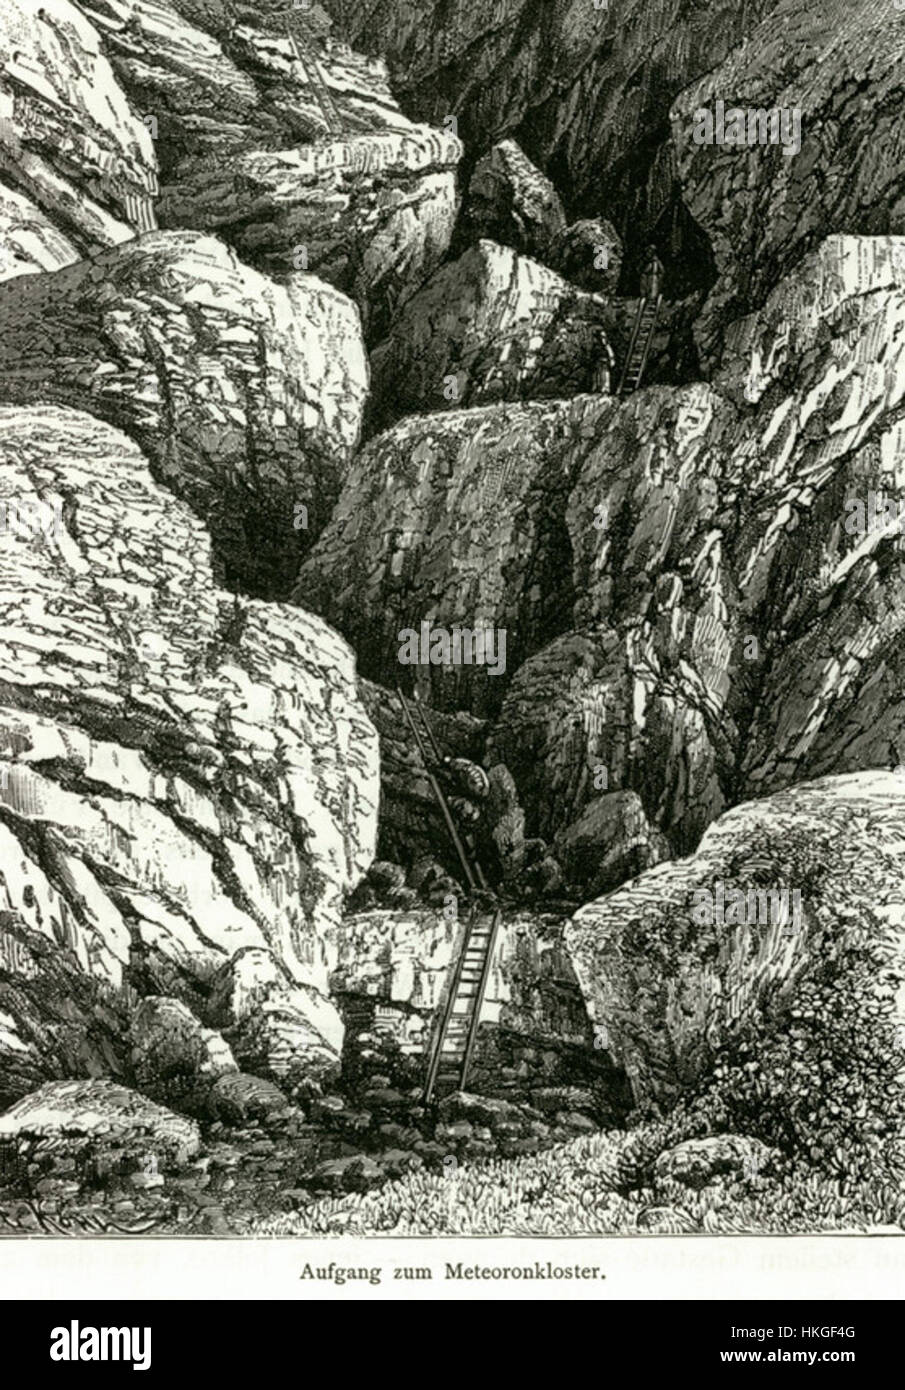 Aufgang zu Meteoronkloster Schweiger Lerchenfeld Amand (Freiherr von) 1887 Banque D'Images